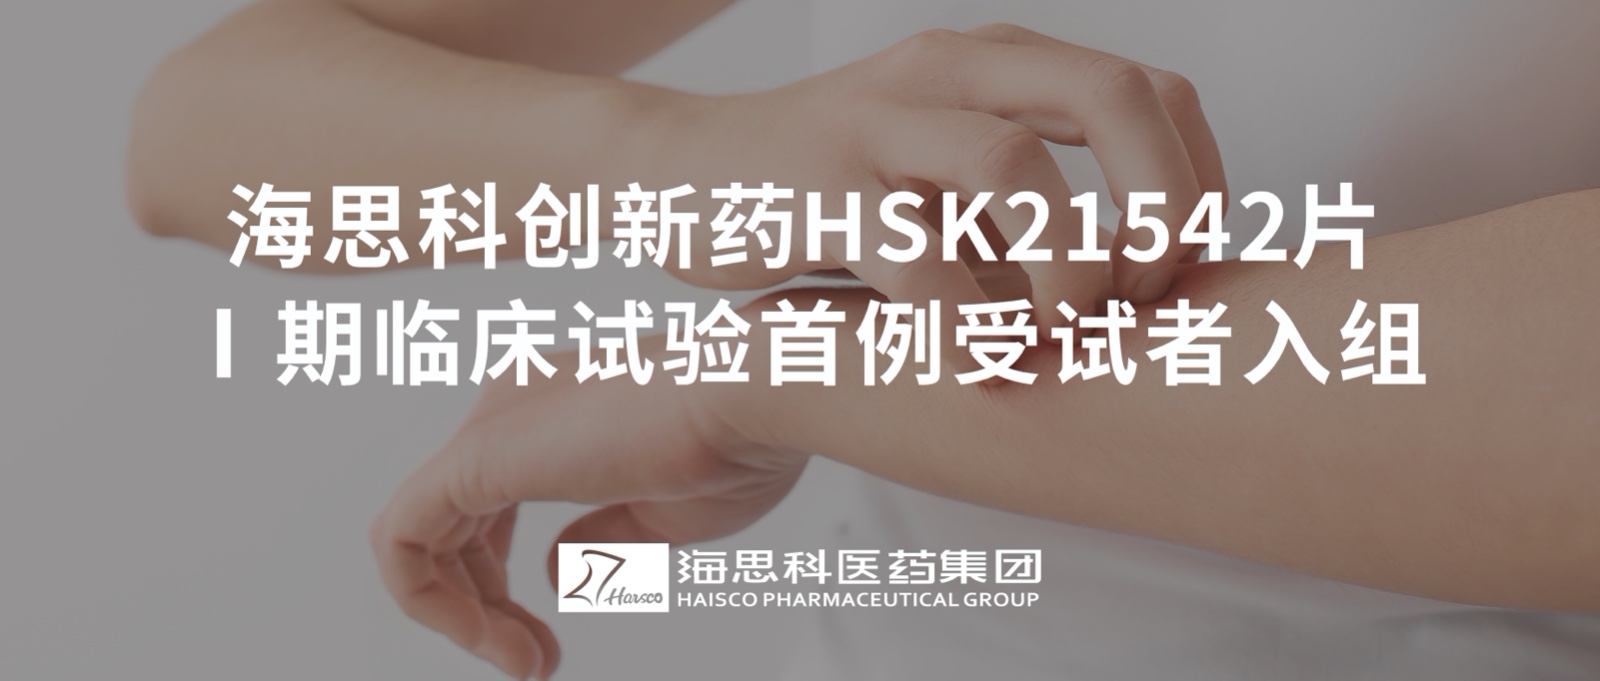 澳门威尼克斯人官网创新药HSK21542片Ⅰ期临床试验首例受试者入组